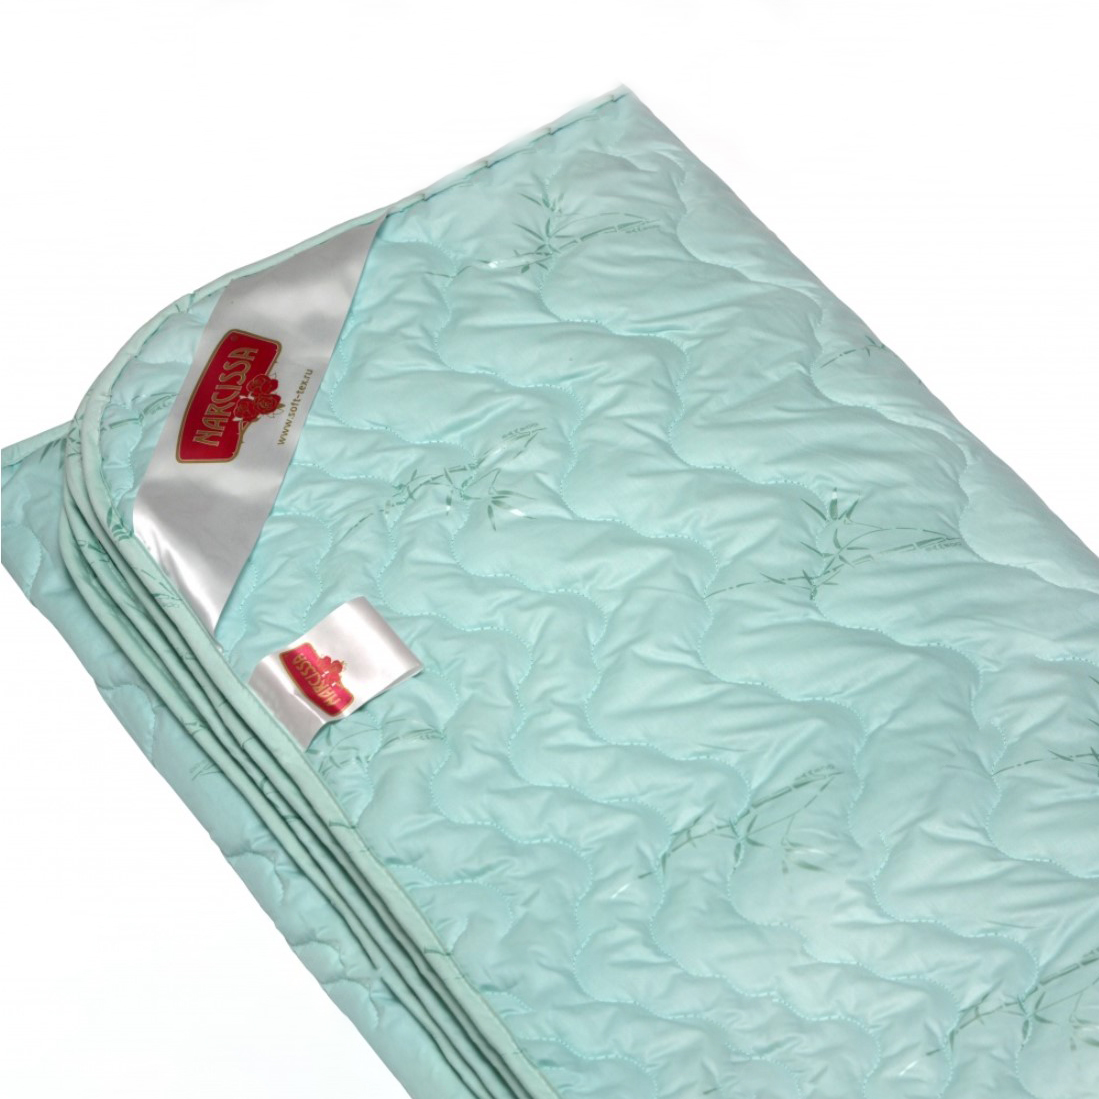 Одеяло Clarette (172х205 см), размер 172х205 см nas708818 Одеяло Clarette (172х205 см) - фото 1